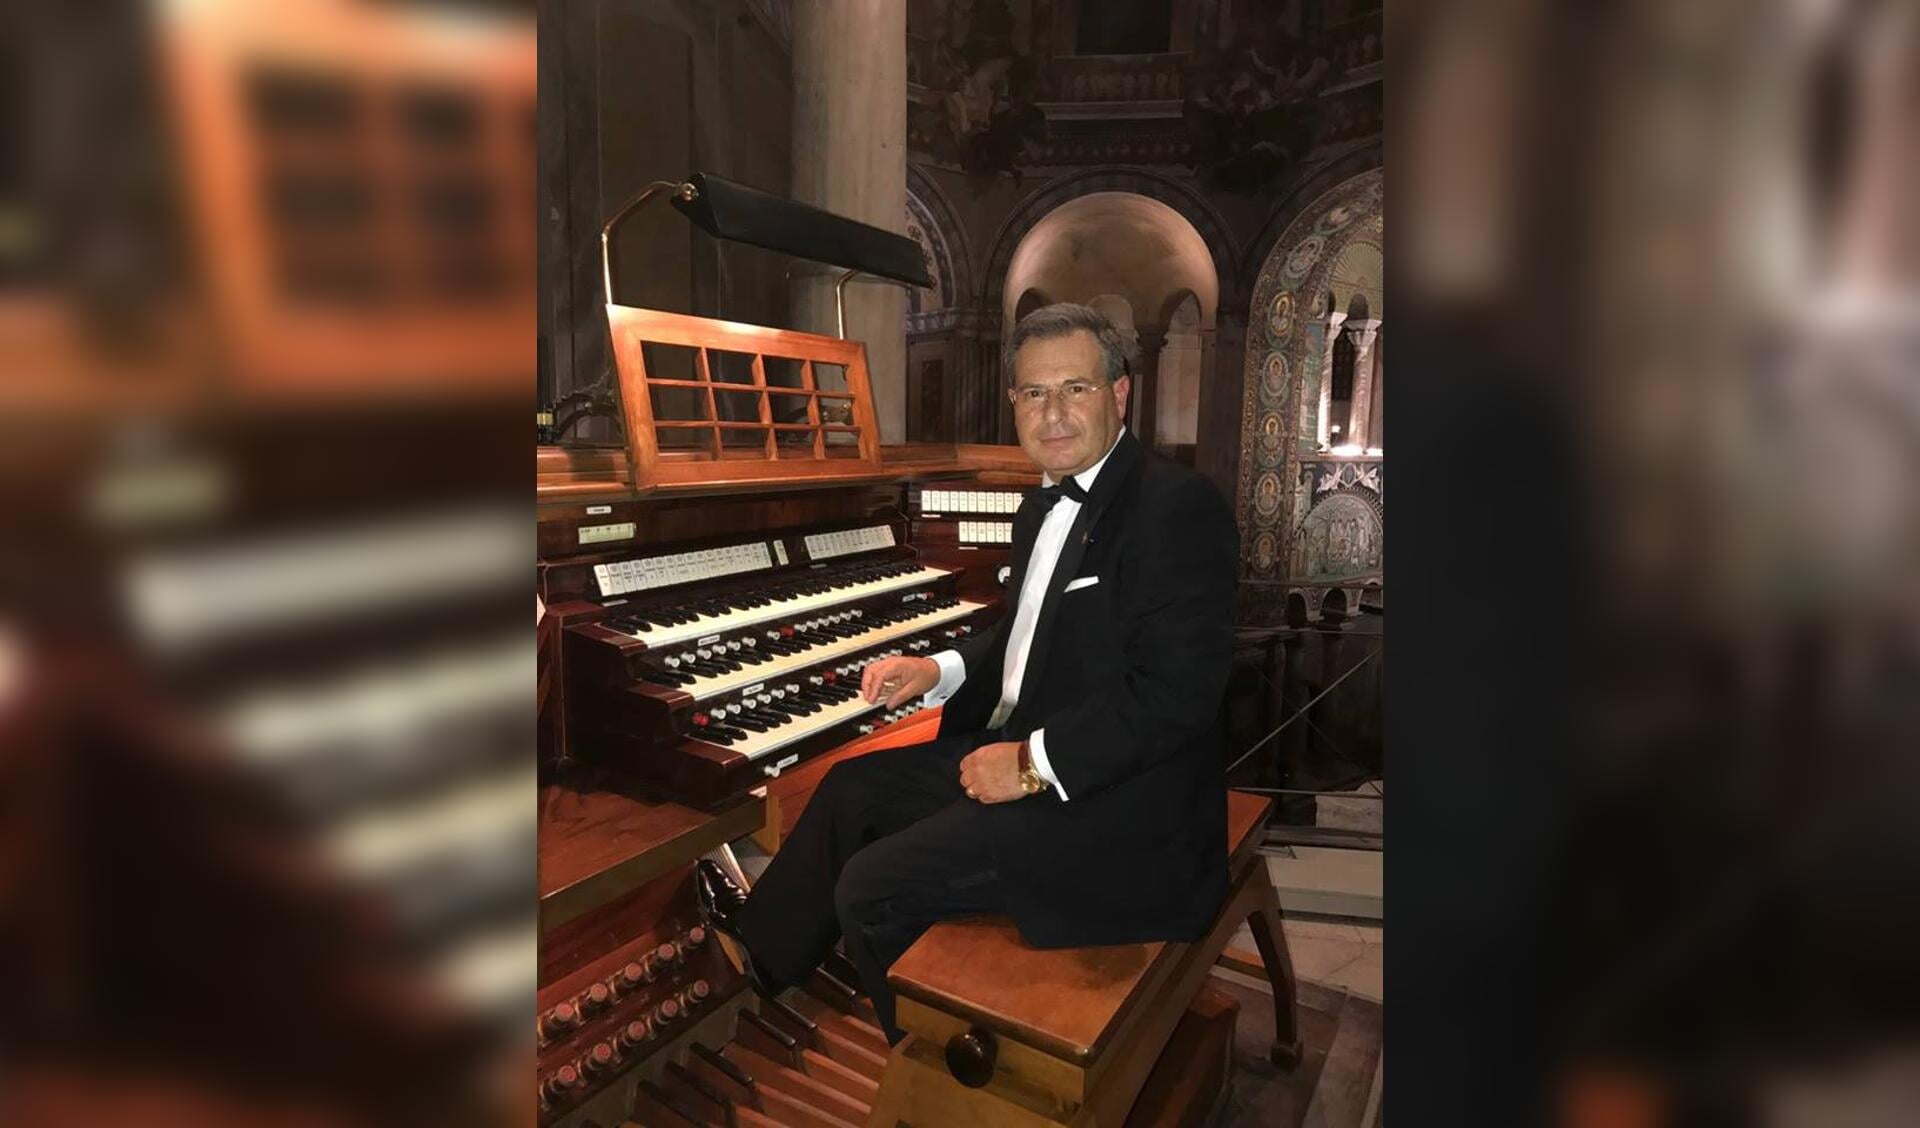 Marco D'Avola, een componist, organist en pianist uit Sicilië, geeft zondag 1 oktober een concert in Delft.  